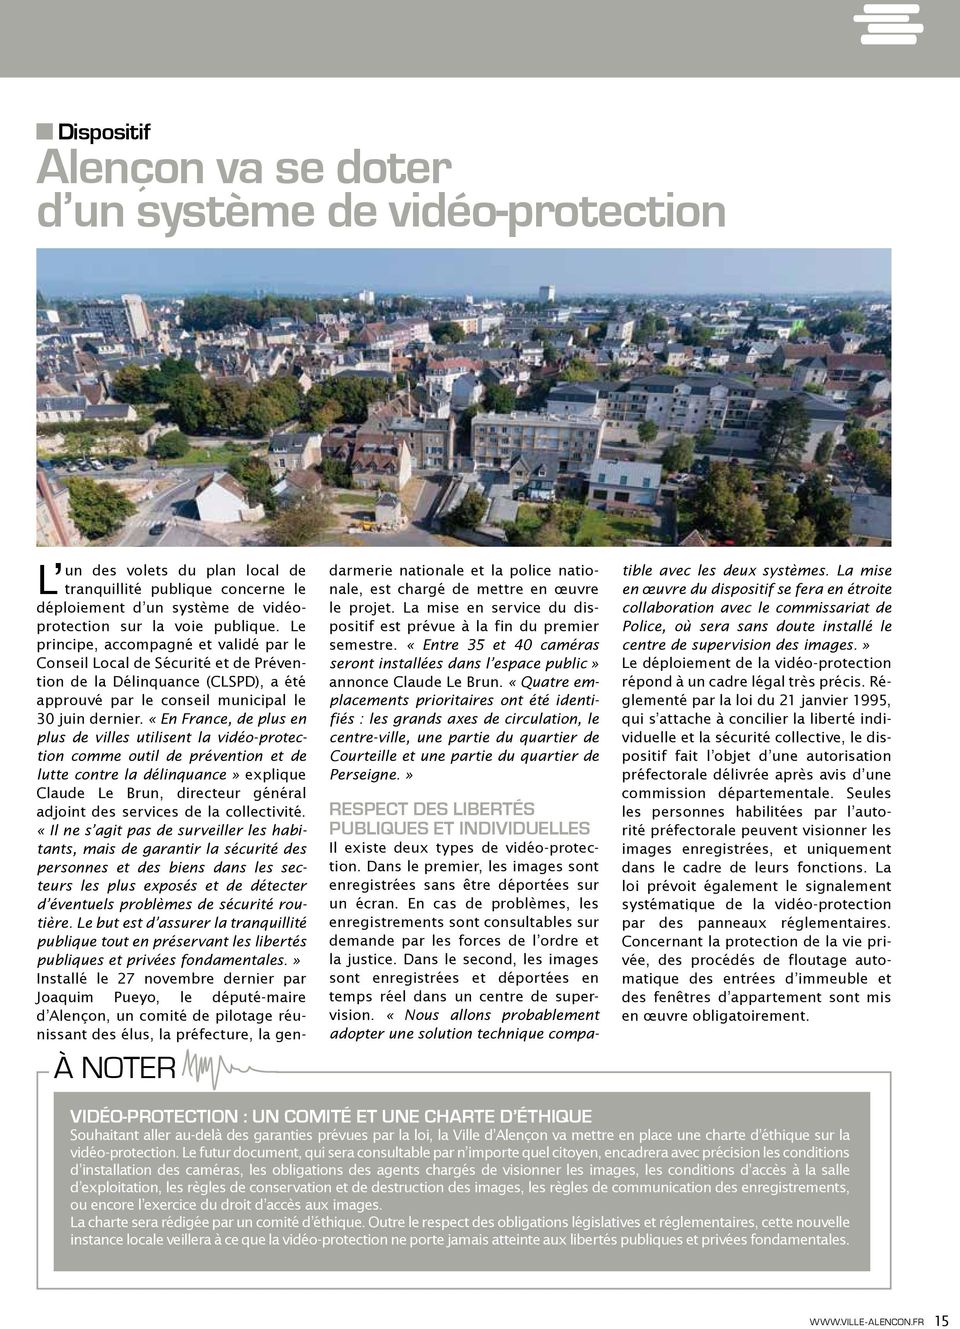 «En France, de plus en plus de villes utilisent la vidéo-protection comme outil de prévention et de lutte contre la délinquance» explique Claude Le Brun, directeur général adjoint des services de la